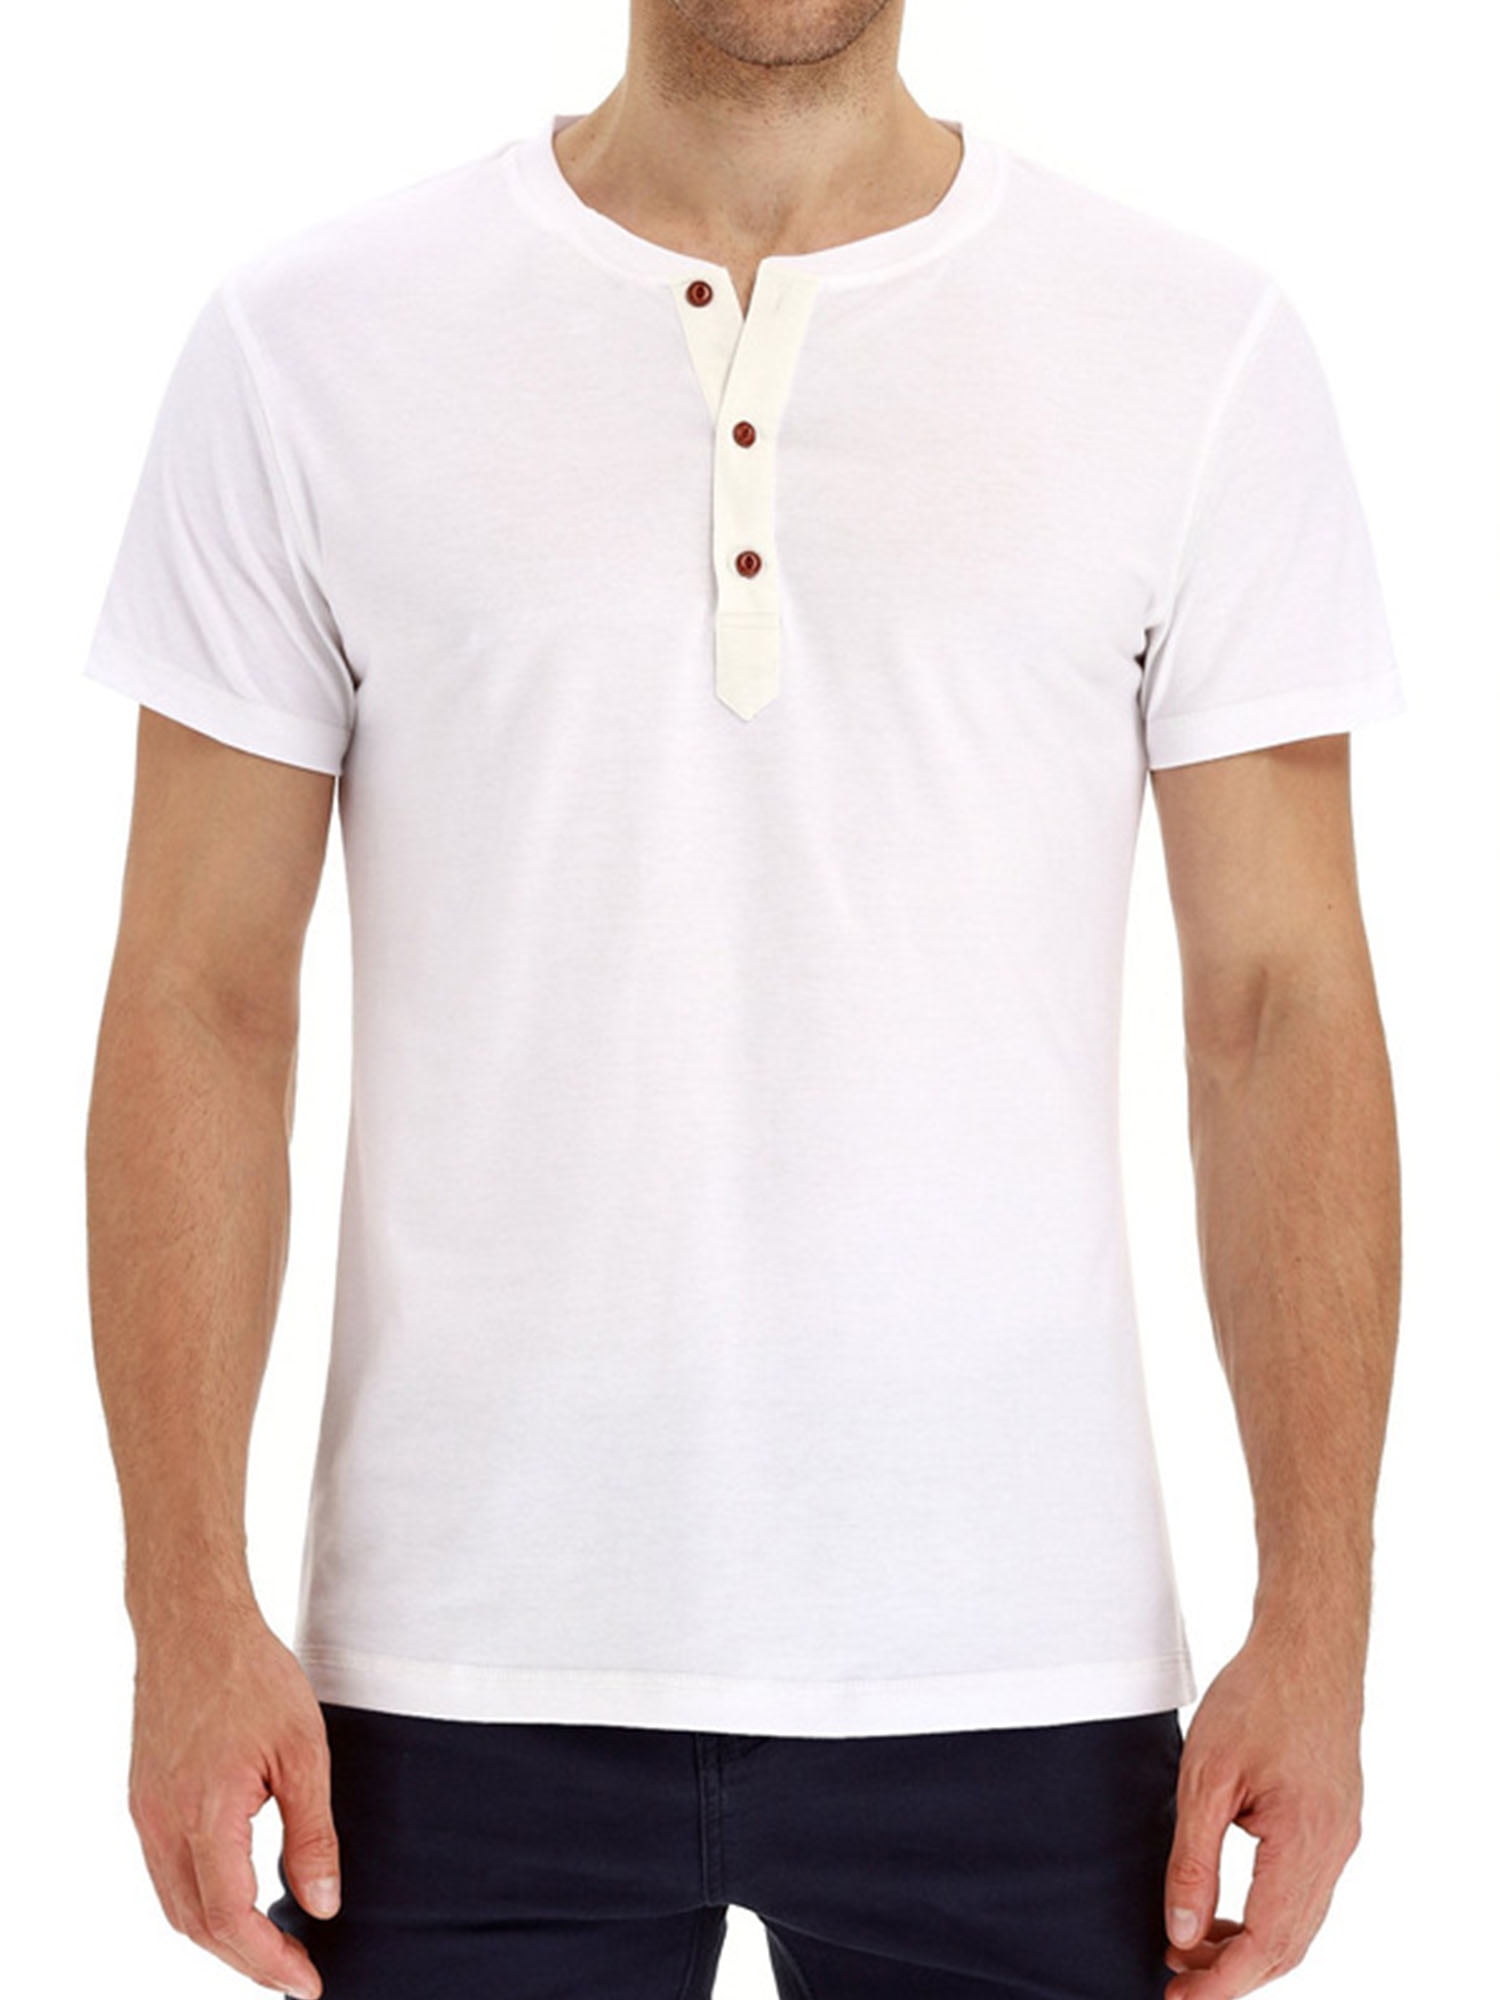 ainr Mens Basic Short Sleeve Button Up Henley T-shirt Top 